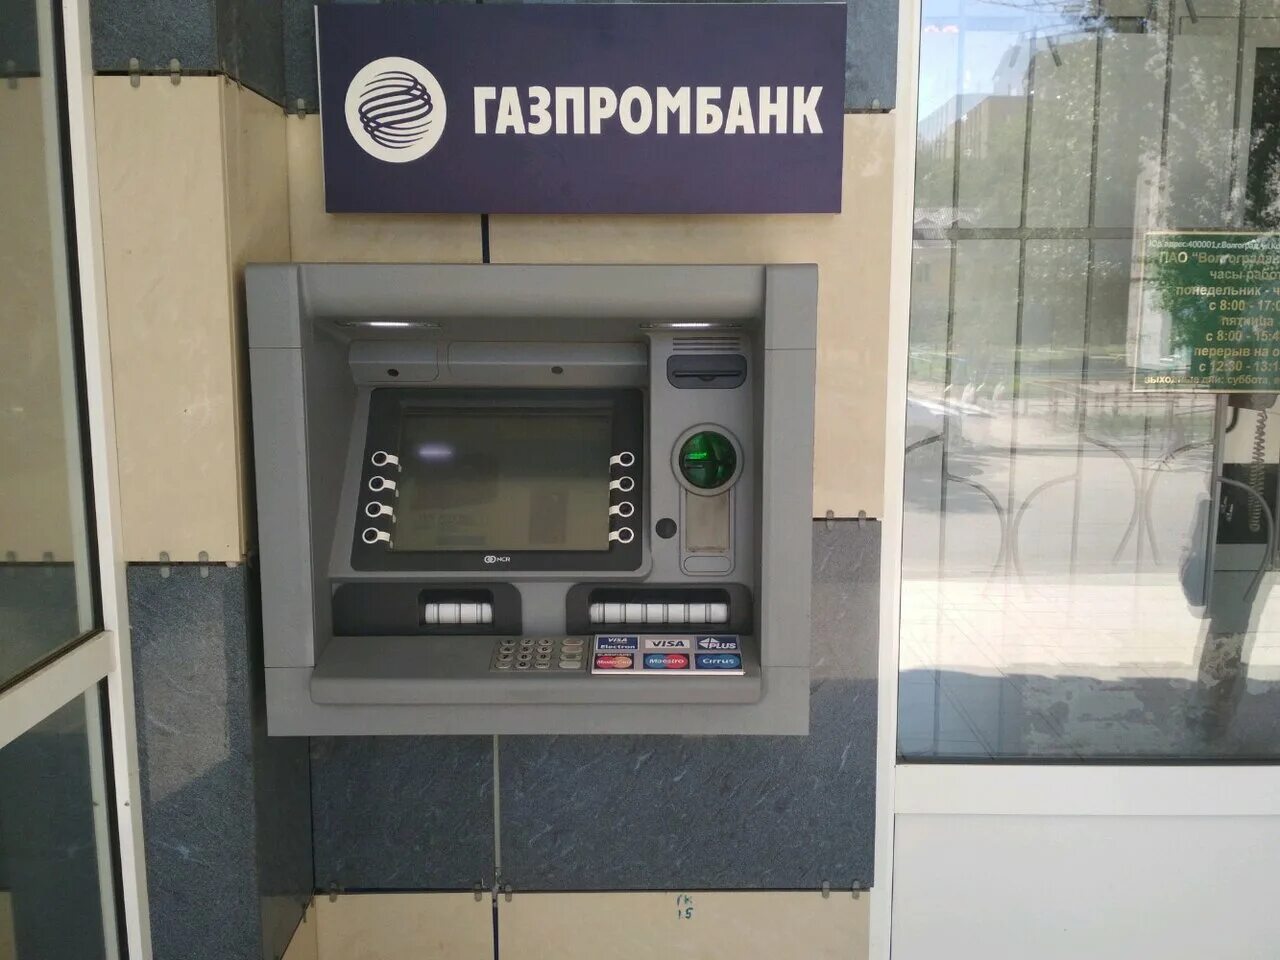 Газпромбанк банкоматы. Терминал Газпромбанк. Газпромовский Банкомат. Банкоматы Газпромбанка в Волгограде. Газпромбанк банкомат пополнение